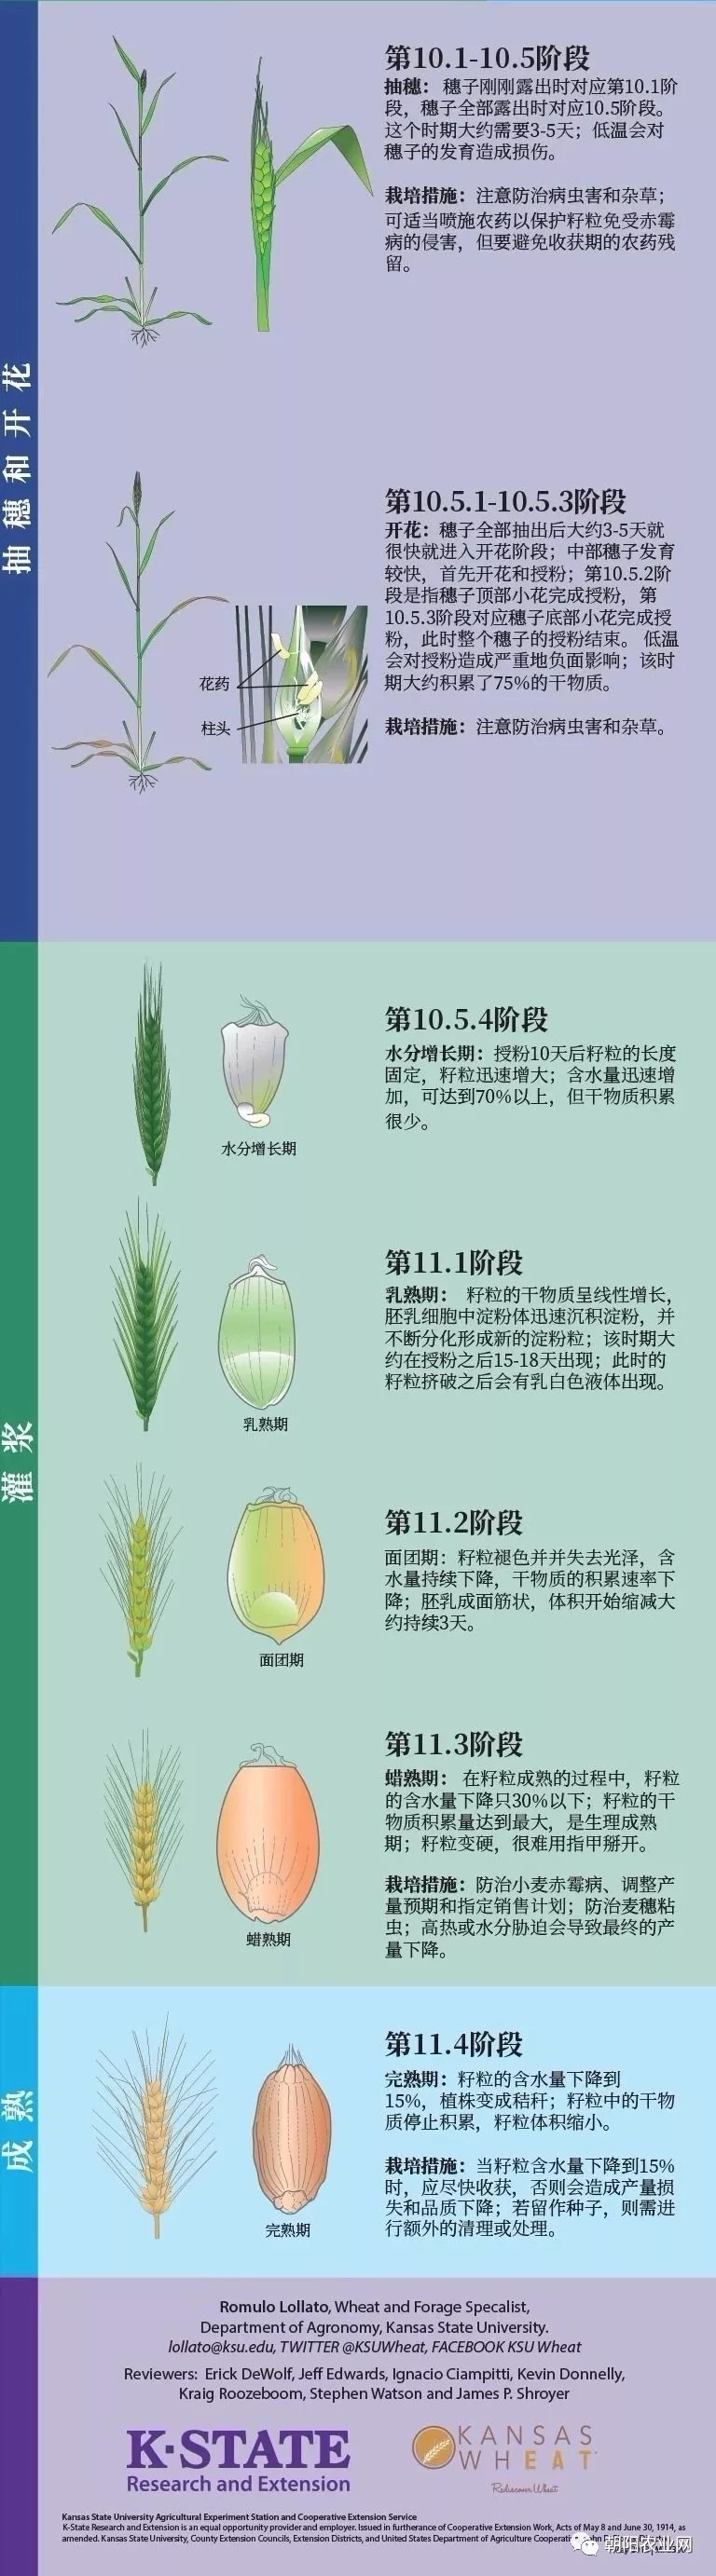 又到小麦种植季,一张图带你了解小麦全生育过程!